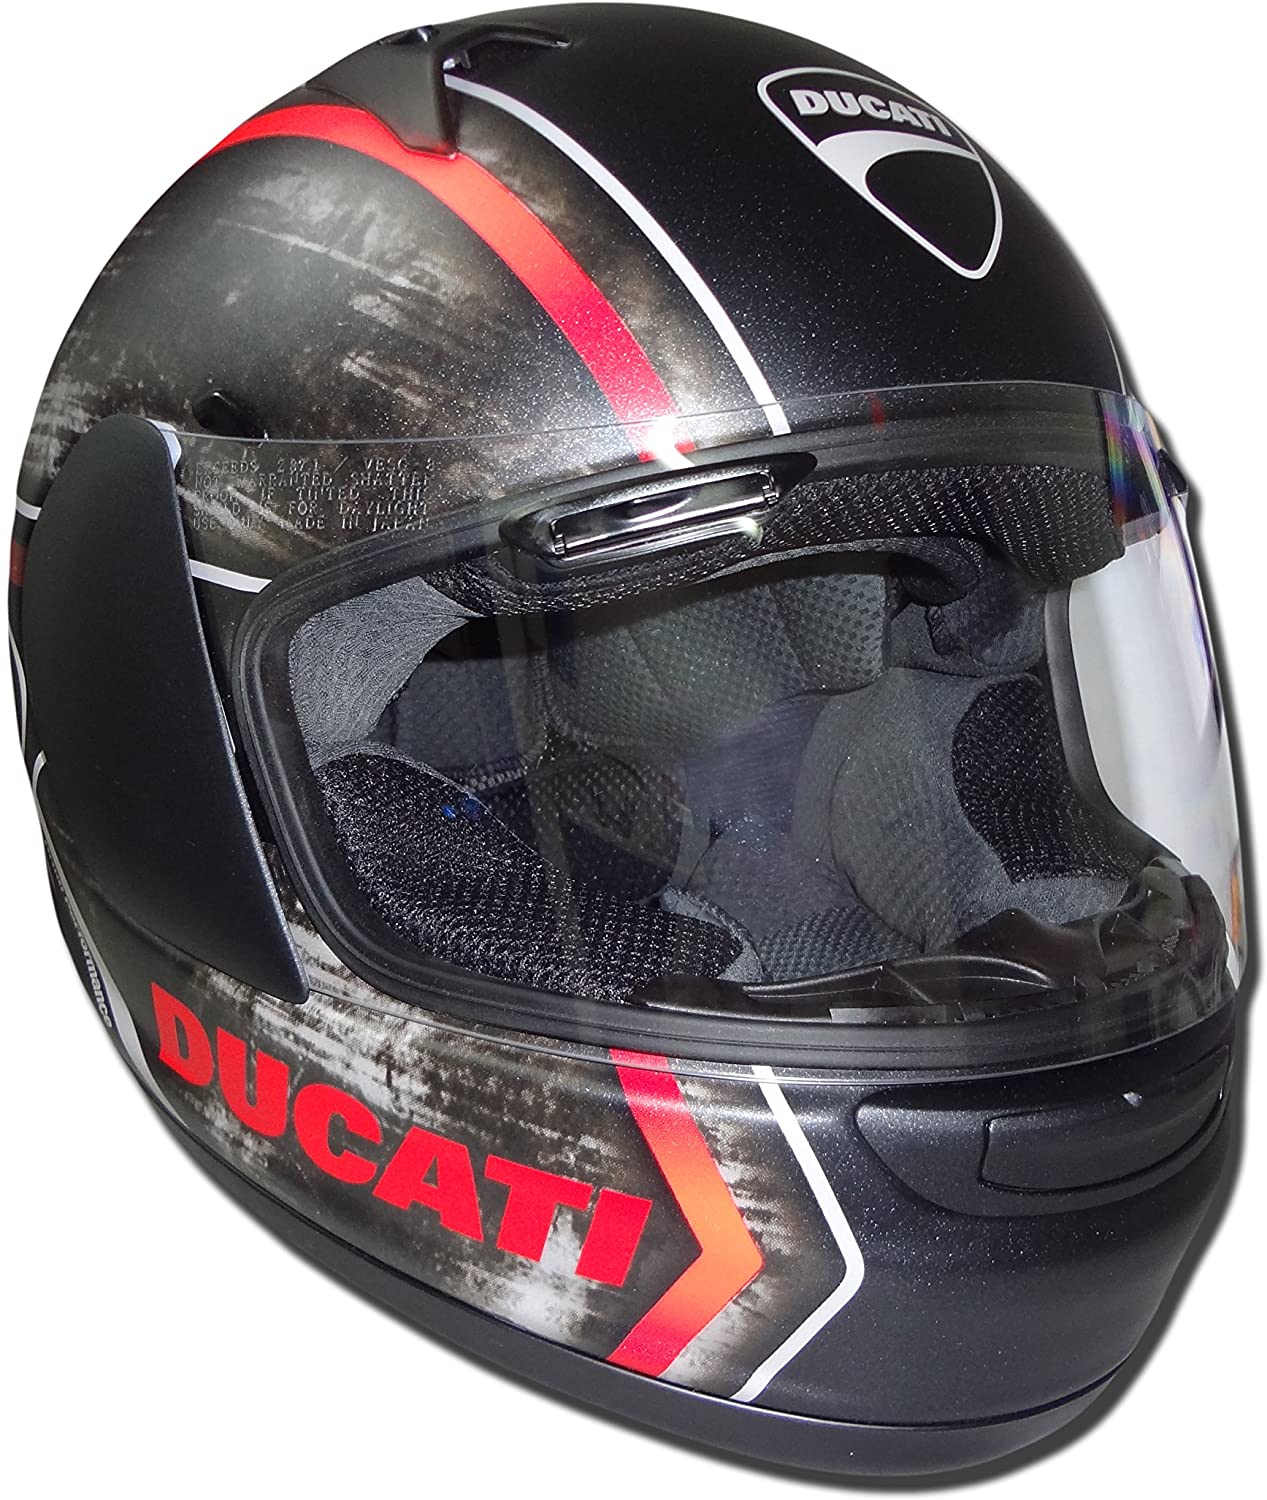 Ducati Thunder Helmet 981027377